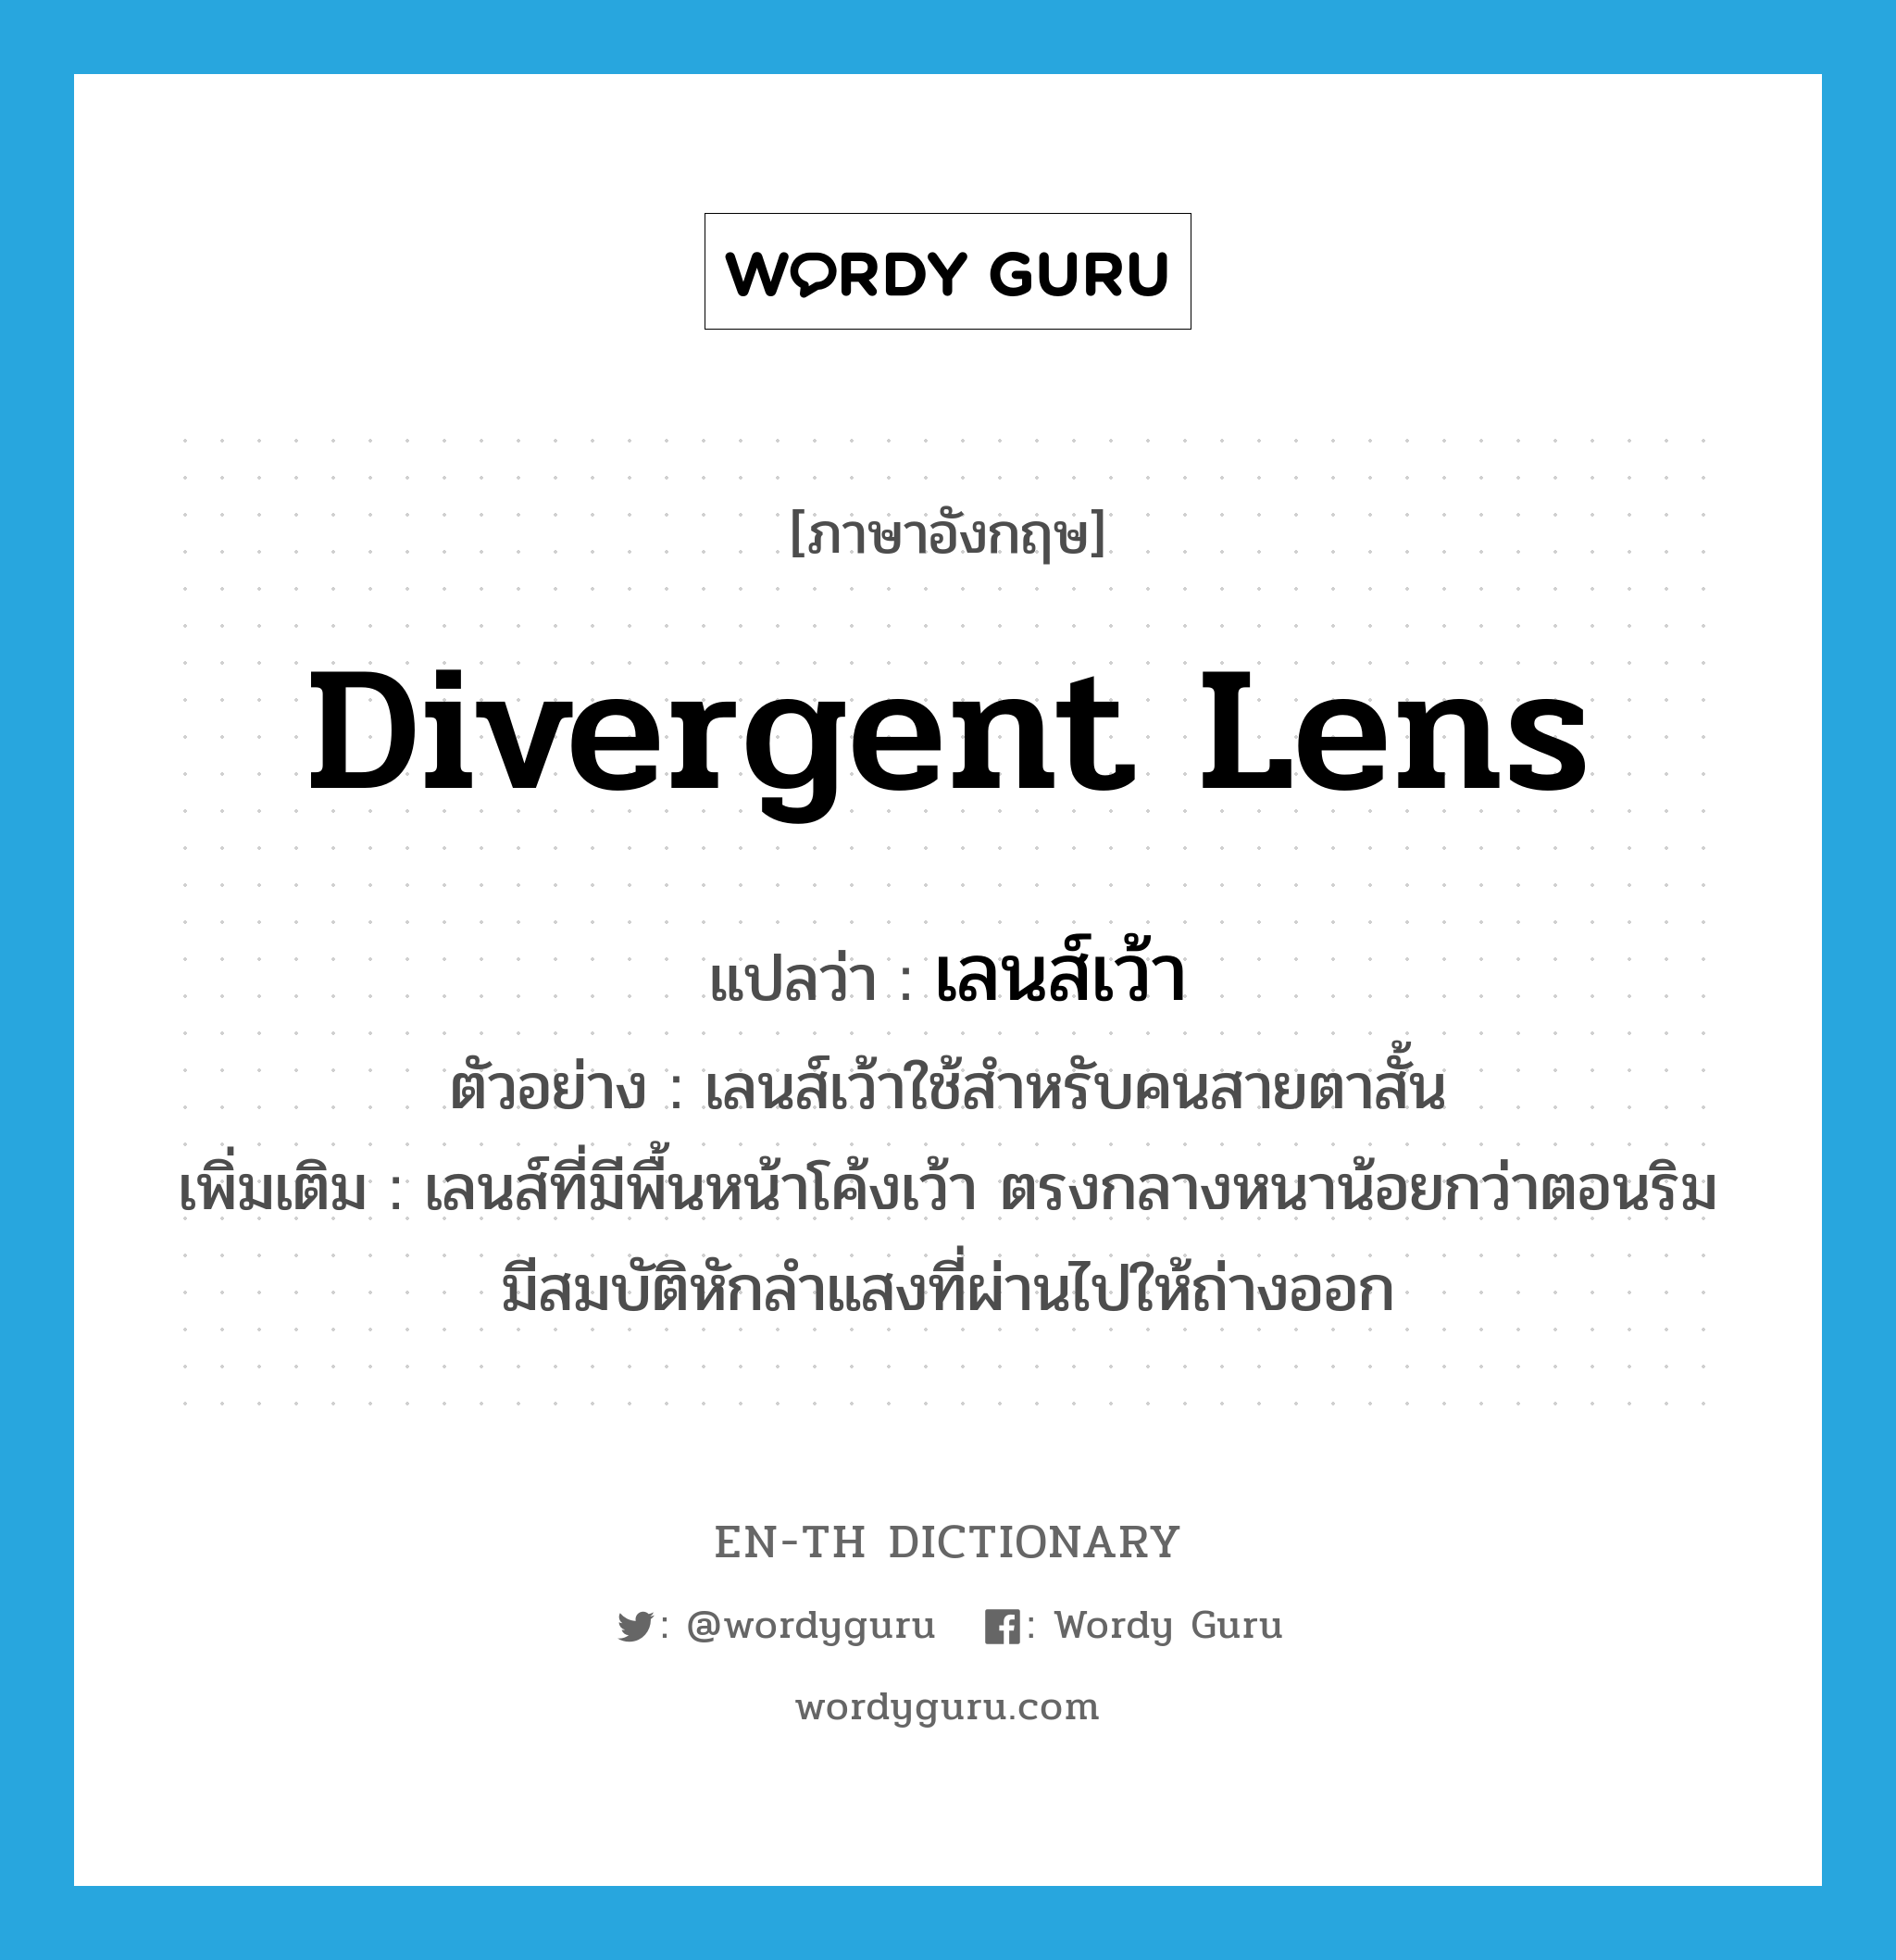 เลนส์เว้า ภาษาอังกฤษ?, คำศัพท์ภาษาอังกฤษ เลนส์เว้า แปลว่า divergent lens ประเภท N ตัวอย่าง เลนส์เว้าใช้สำหรับคนสายตาสั้น เพิ่มเติม เลนส์ที่มีพื้นหน้าโค้งเว้า ตรงกลางหนาน้อยกว่าตอนริม มีสมบัติหักลำแสงที่ผ่านไปให้ถ่างออก หมวด N